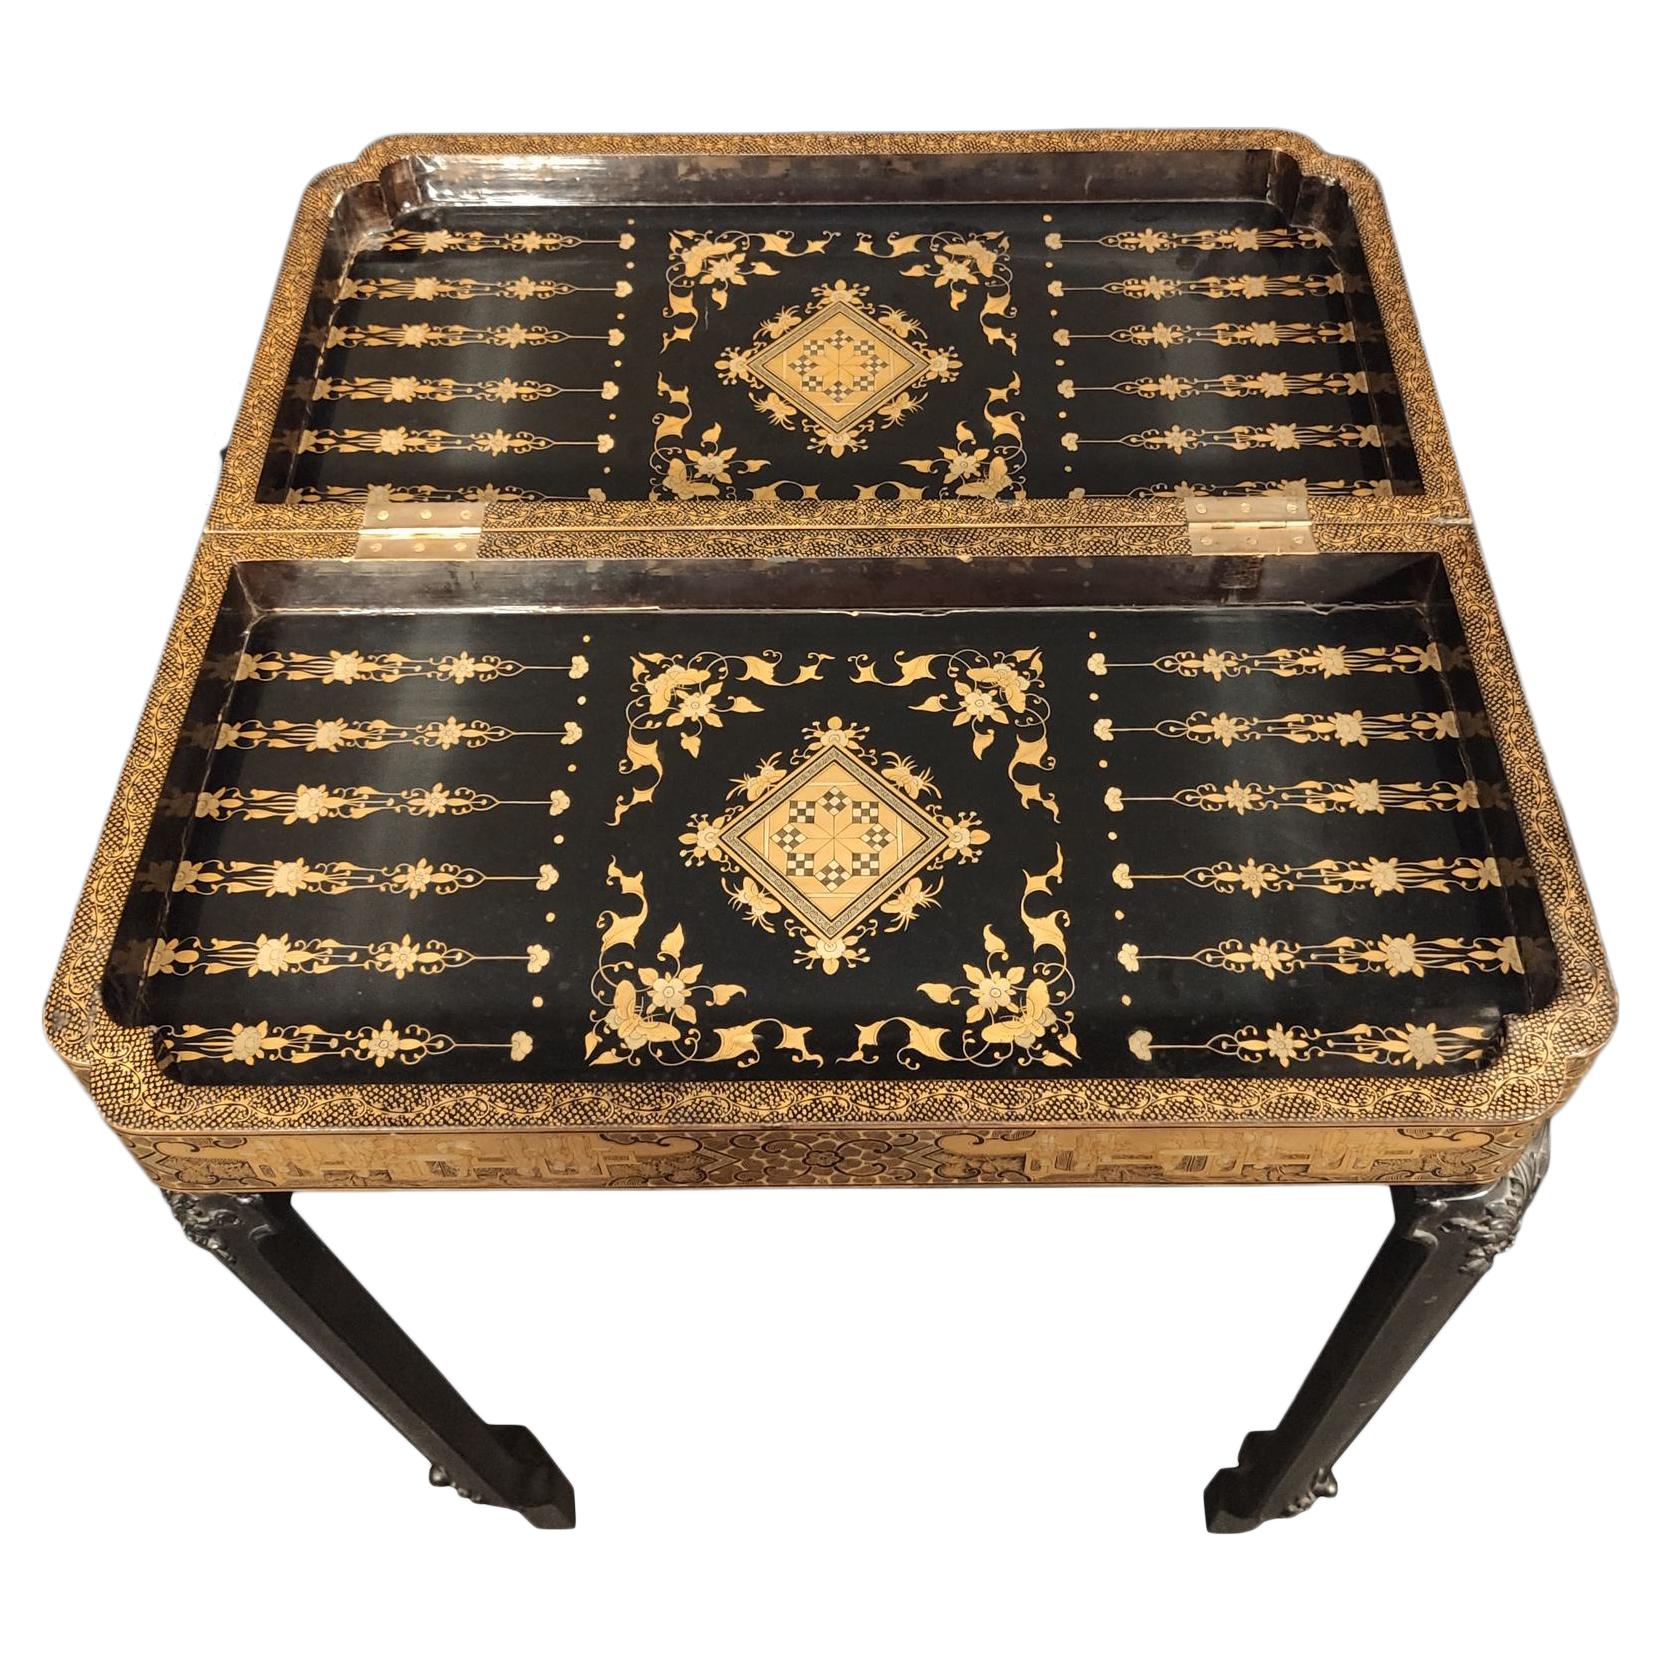 Planche à échecs d'exportation chinoise du 19e siècle laquée et en nacre avec une table